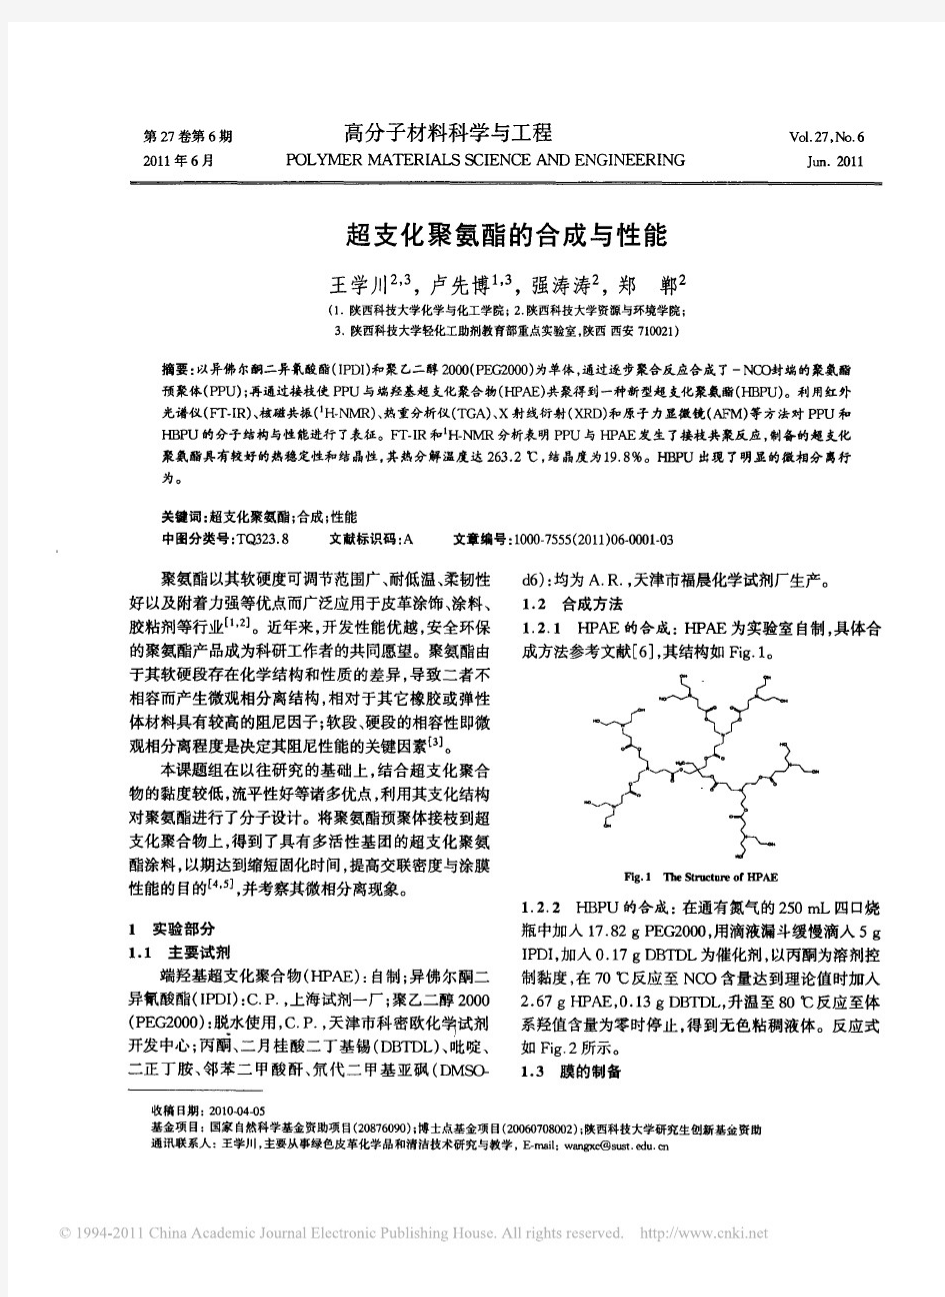 超支化聚氨酯的合成与性能